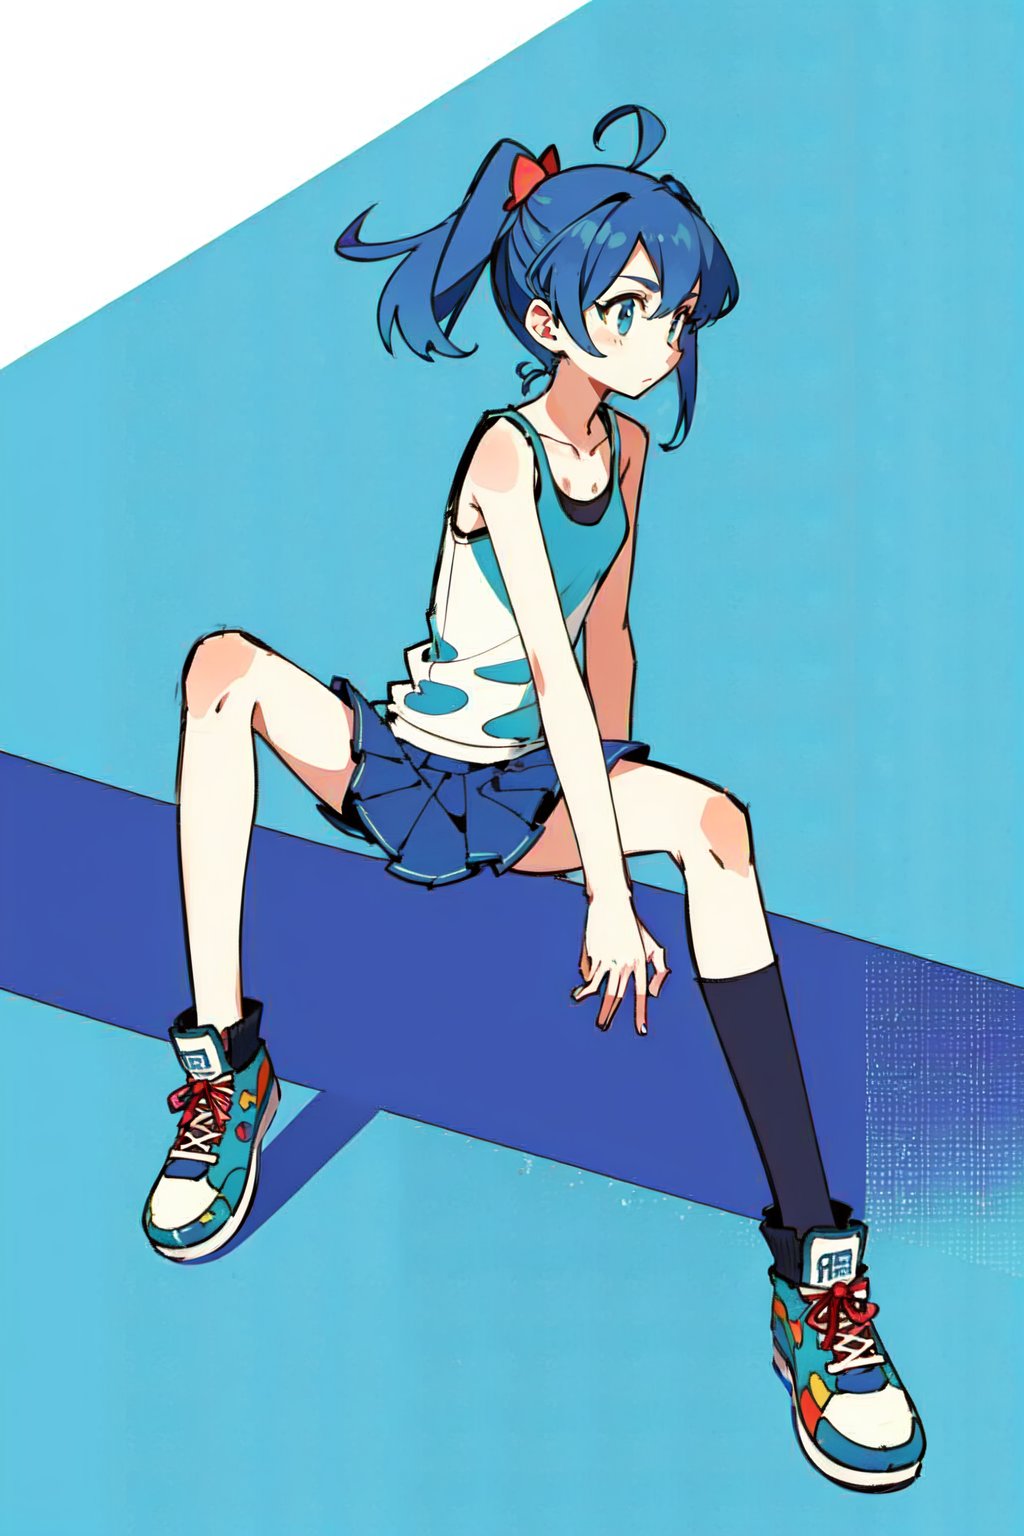 1girl, medium blue hair, tank top, skirt, snikers, skate park backgrund, park in background